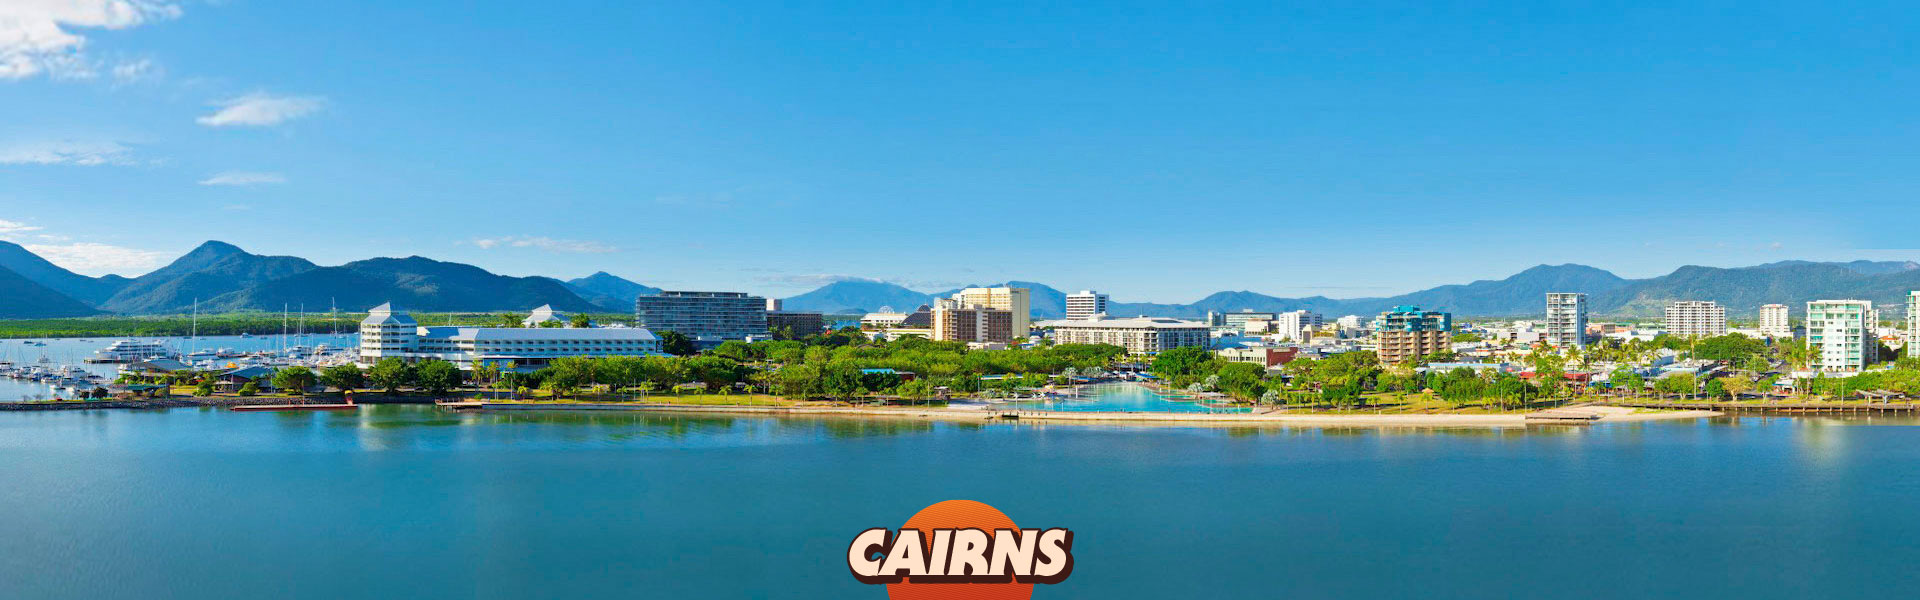 Cairns Cityscape